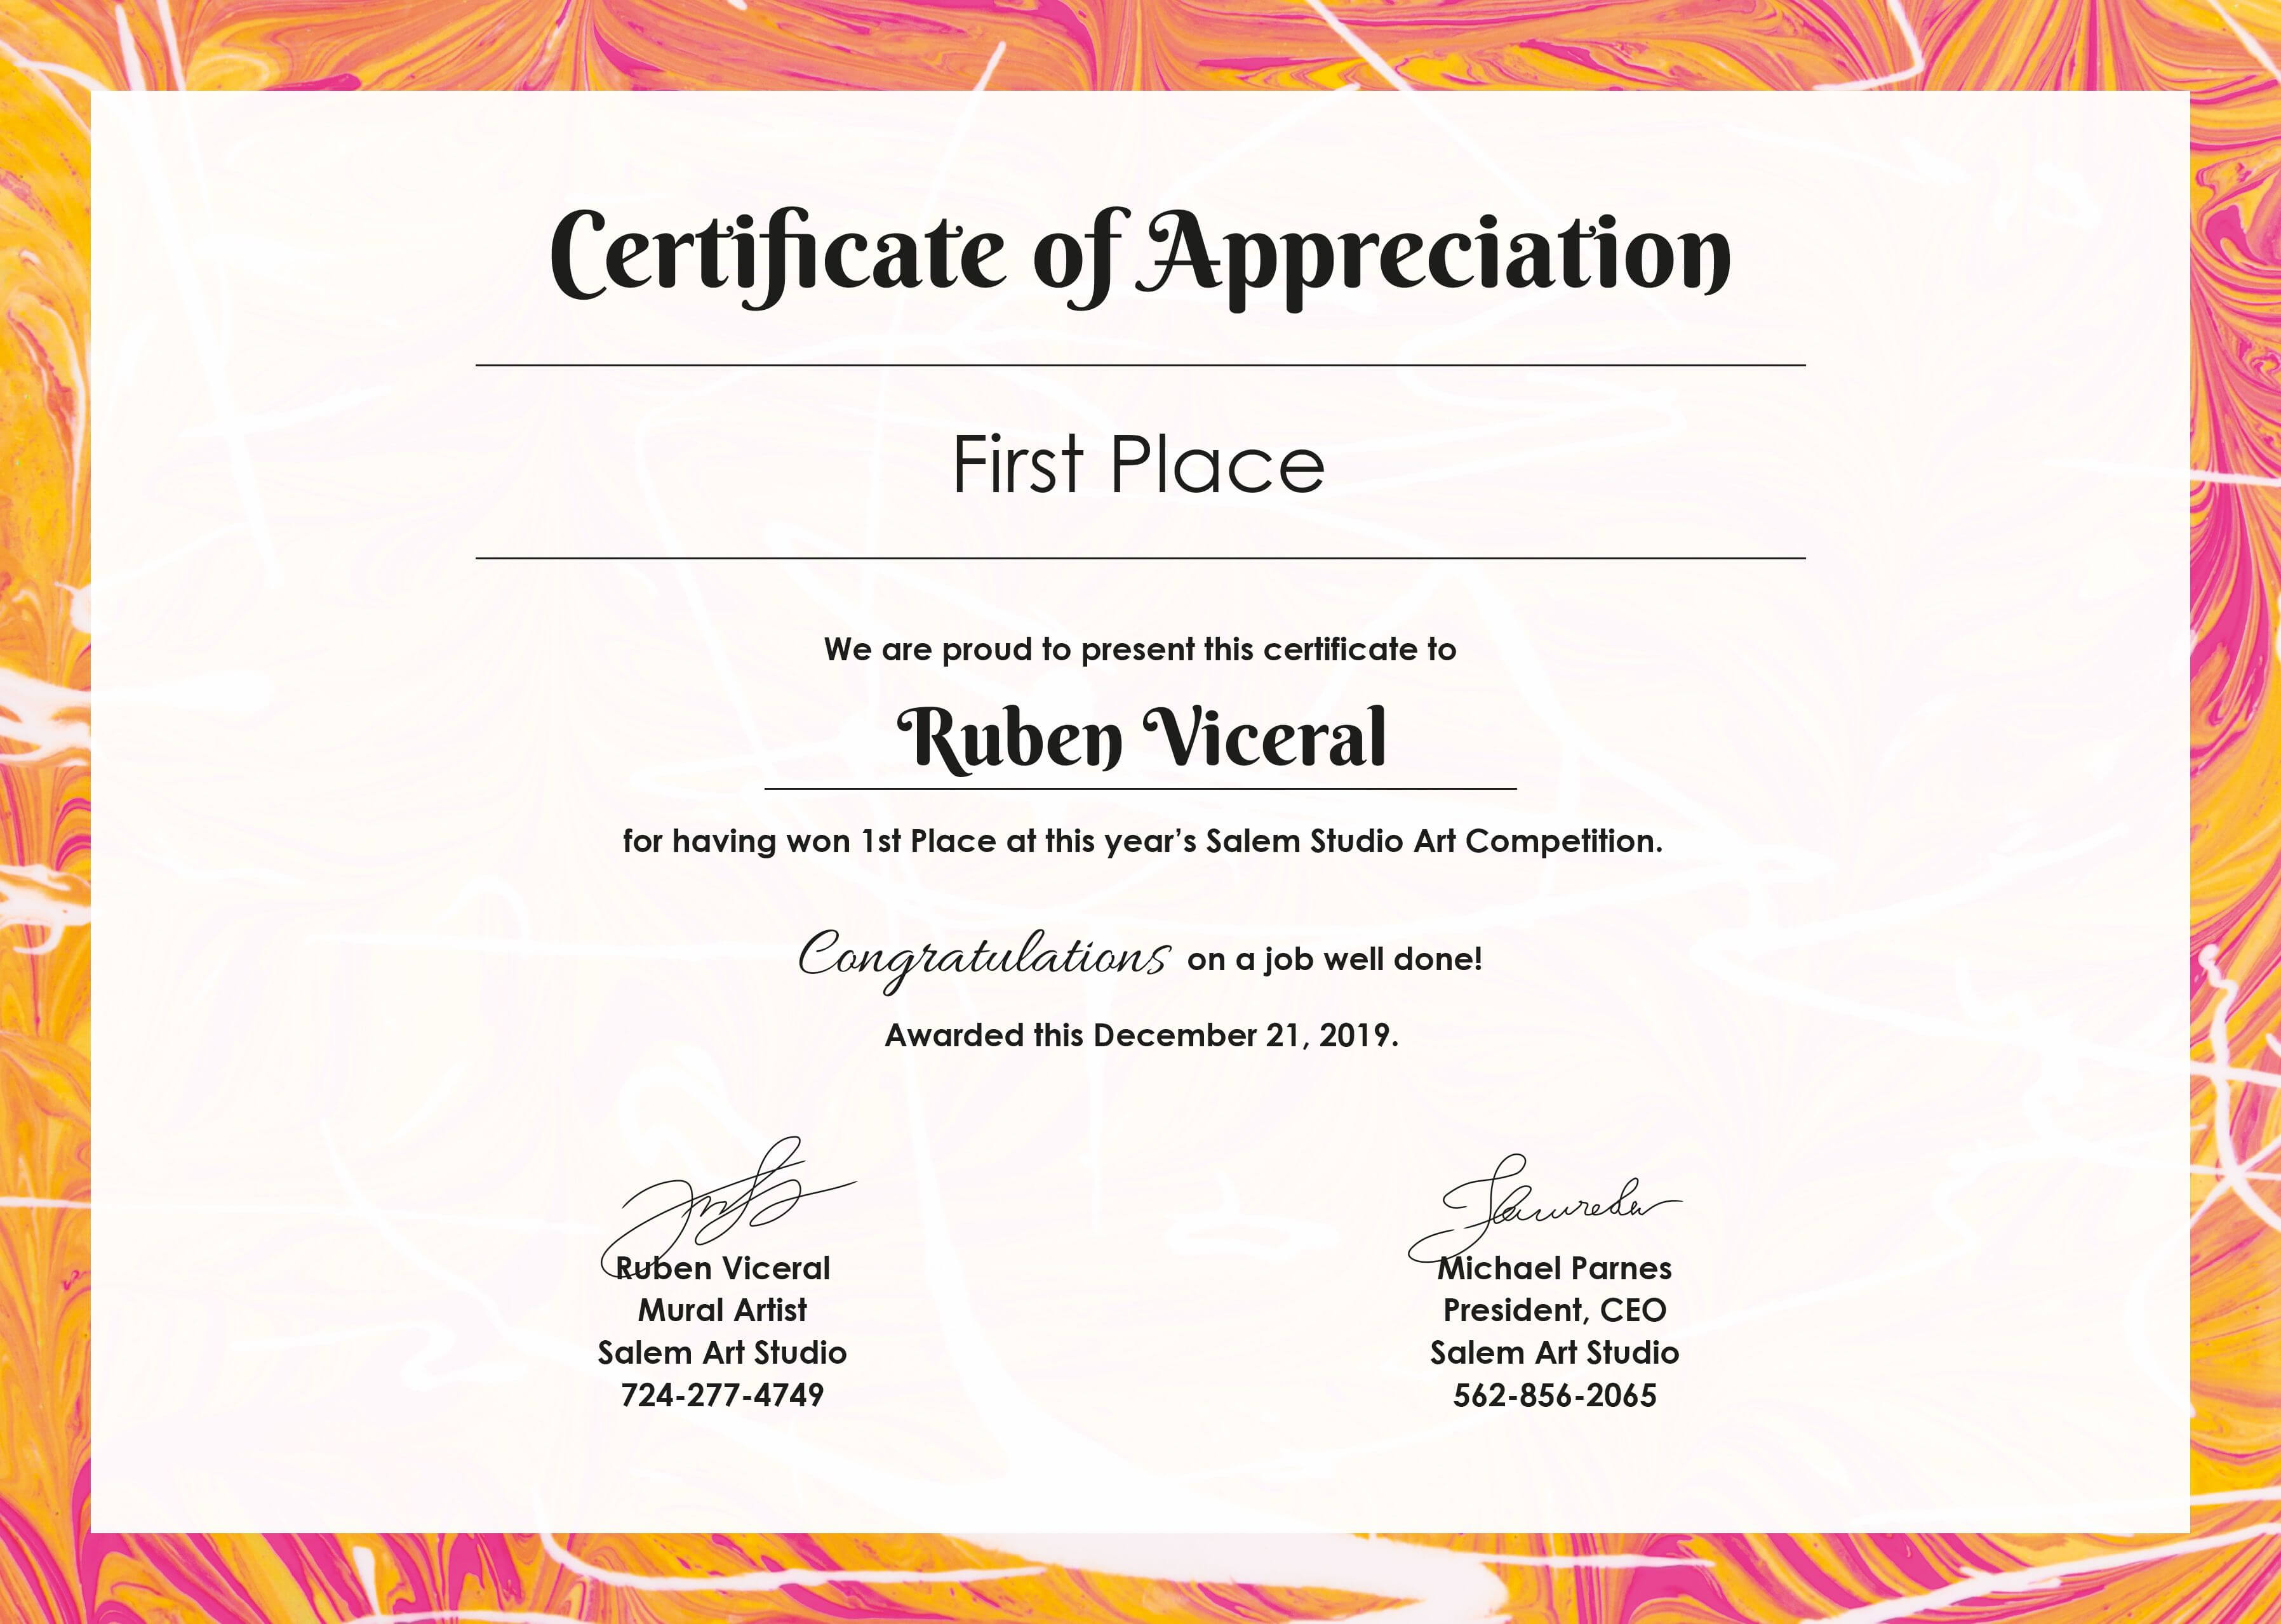 Free Appreciation Certificate | Certificate Of Appreciation Inside Free Certificate Of Destruction Template